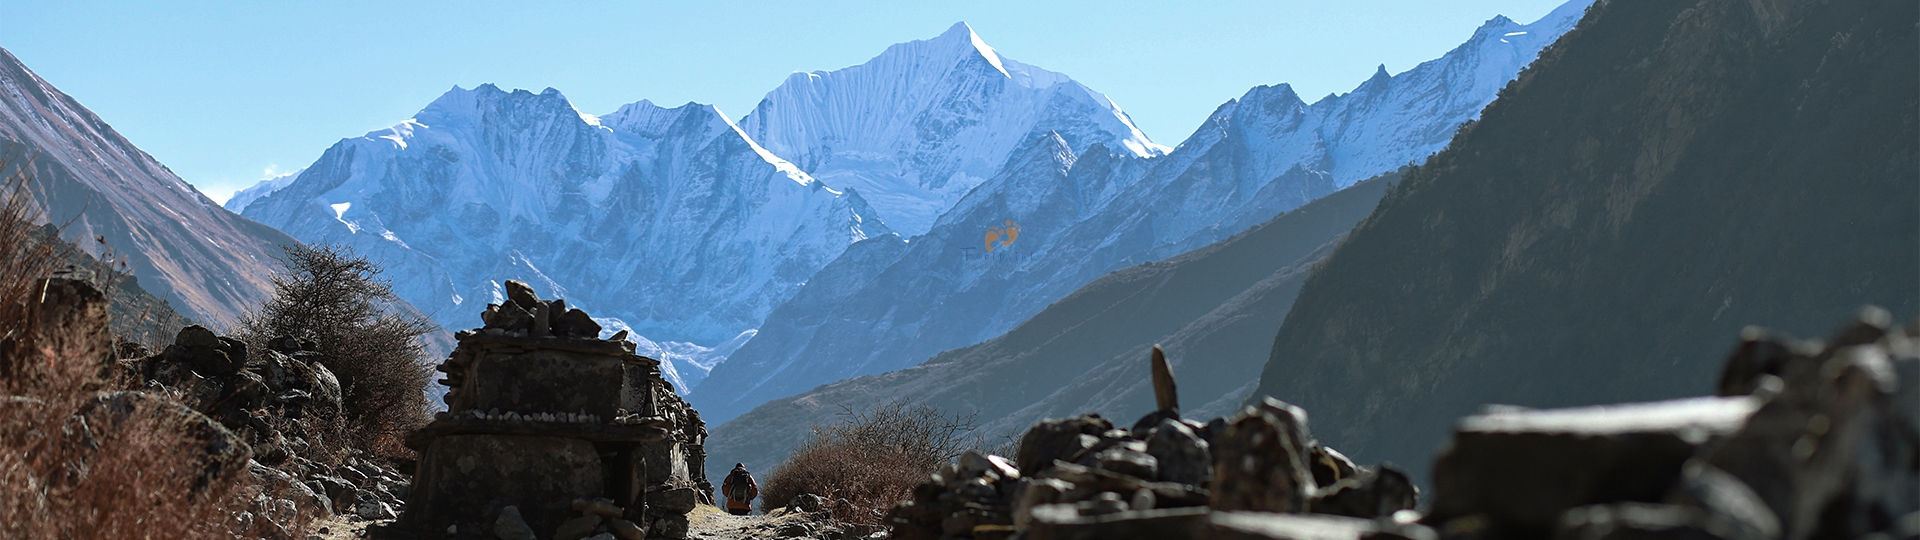 Top 12 Reasons to Choose Langtang Valley Trek